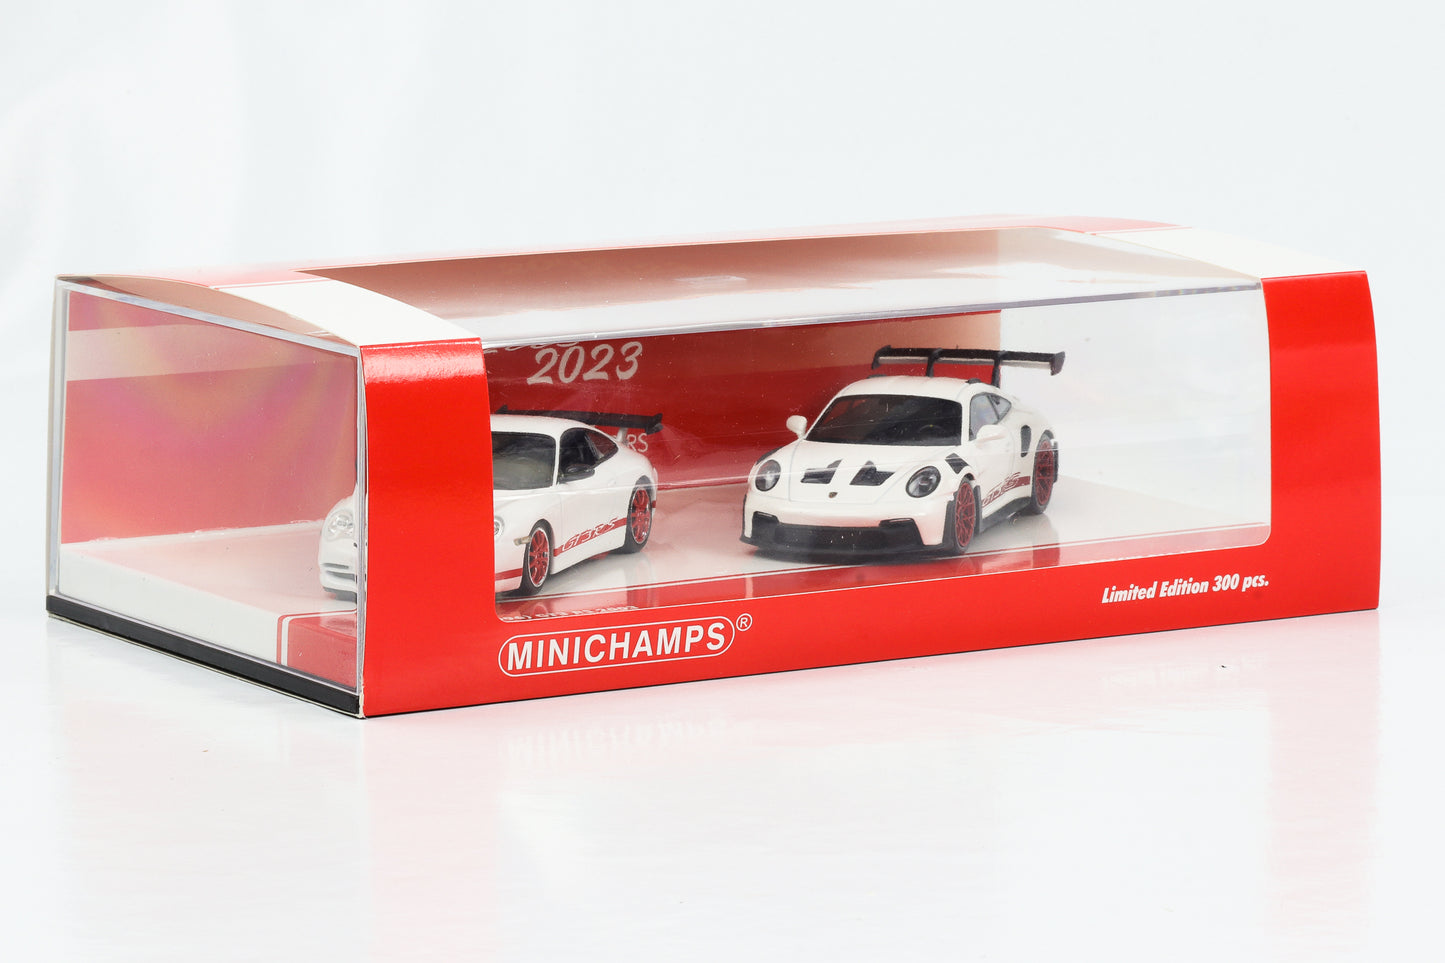 1:43 2 مجموعة سيارات 20 عامًا من بورش 911 996 GT3 RS 2003 + 911 992 GT3 RS 2023 Minichamps